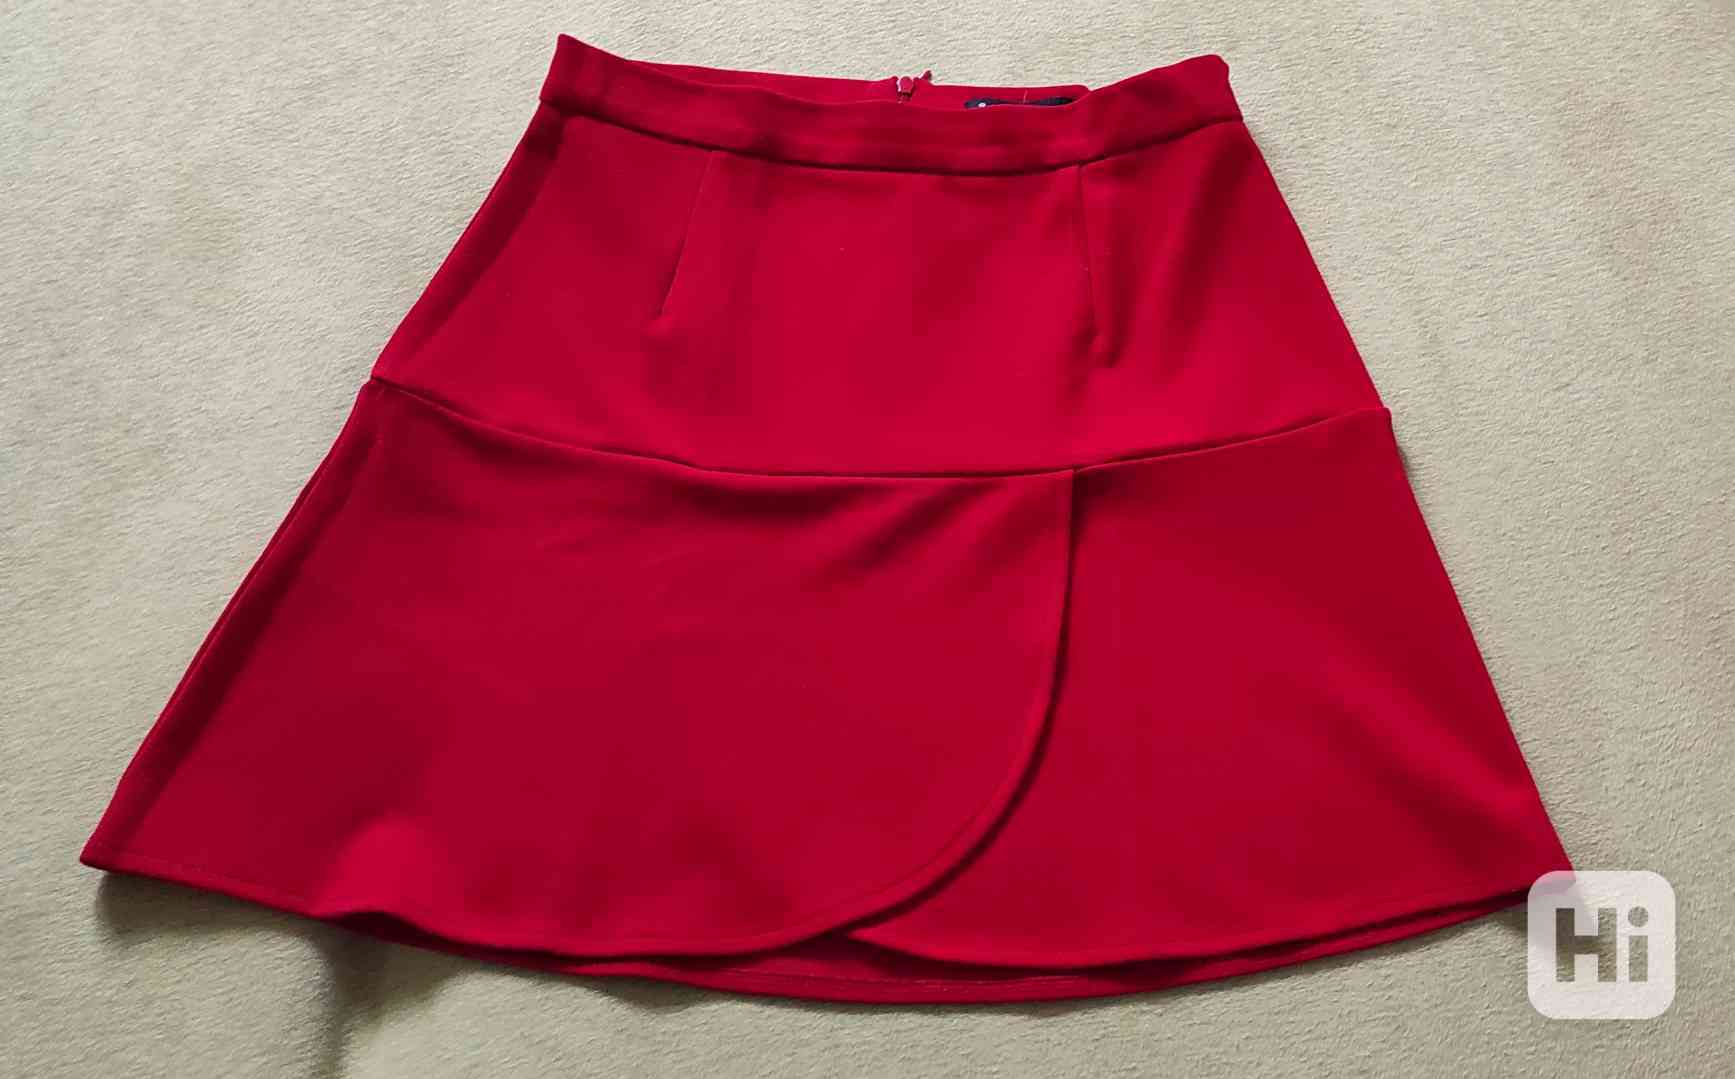 Dámská sukně, velikost M  - foto 1